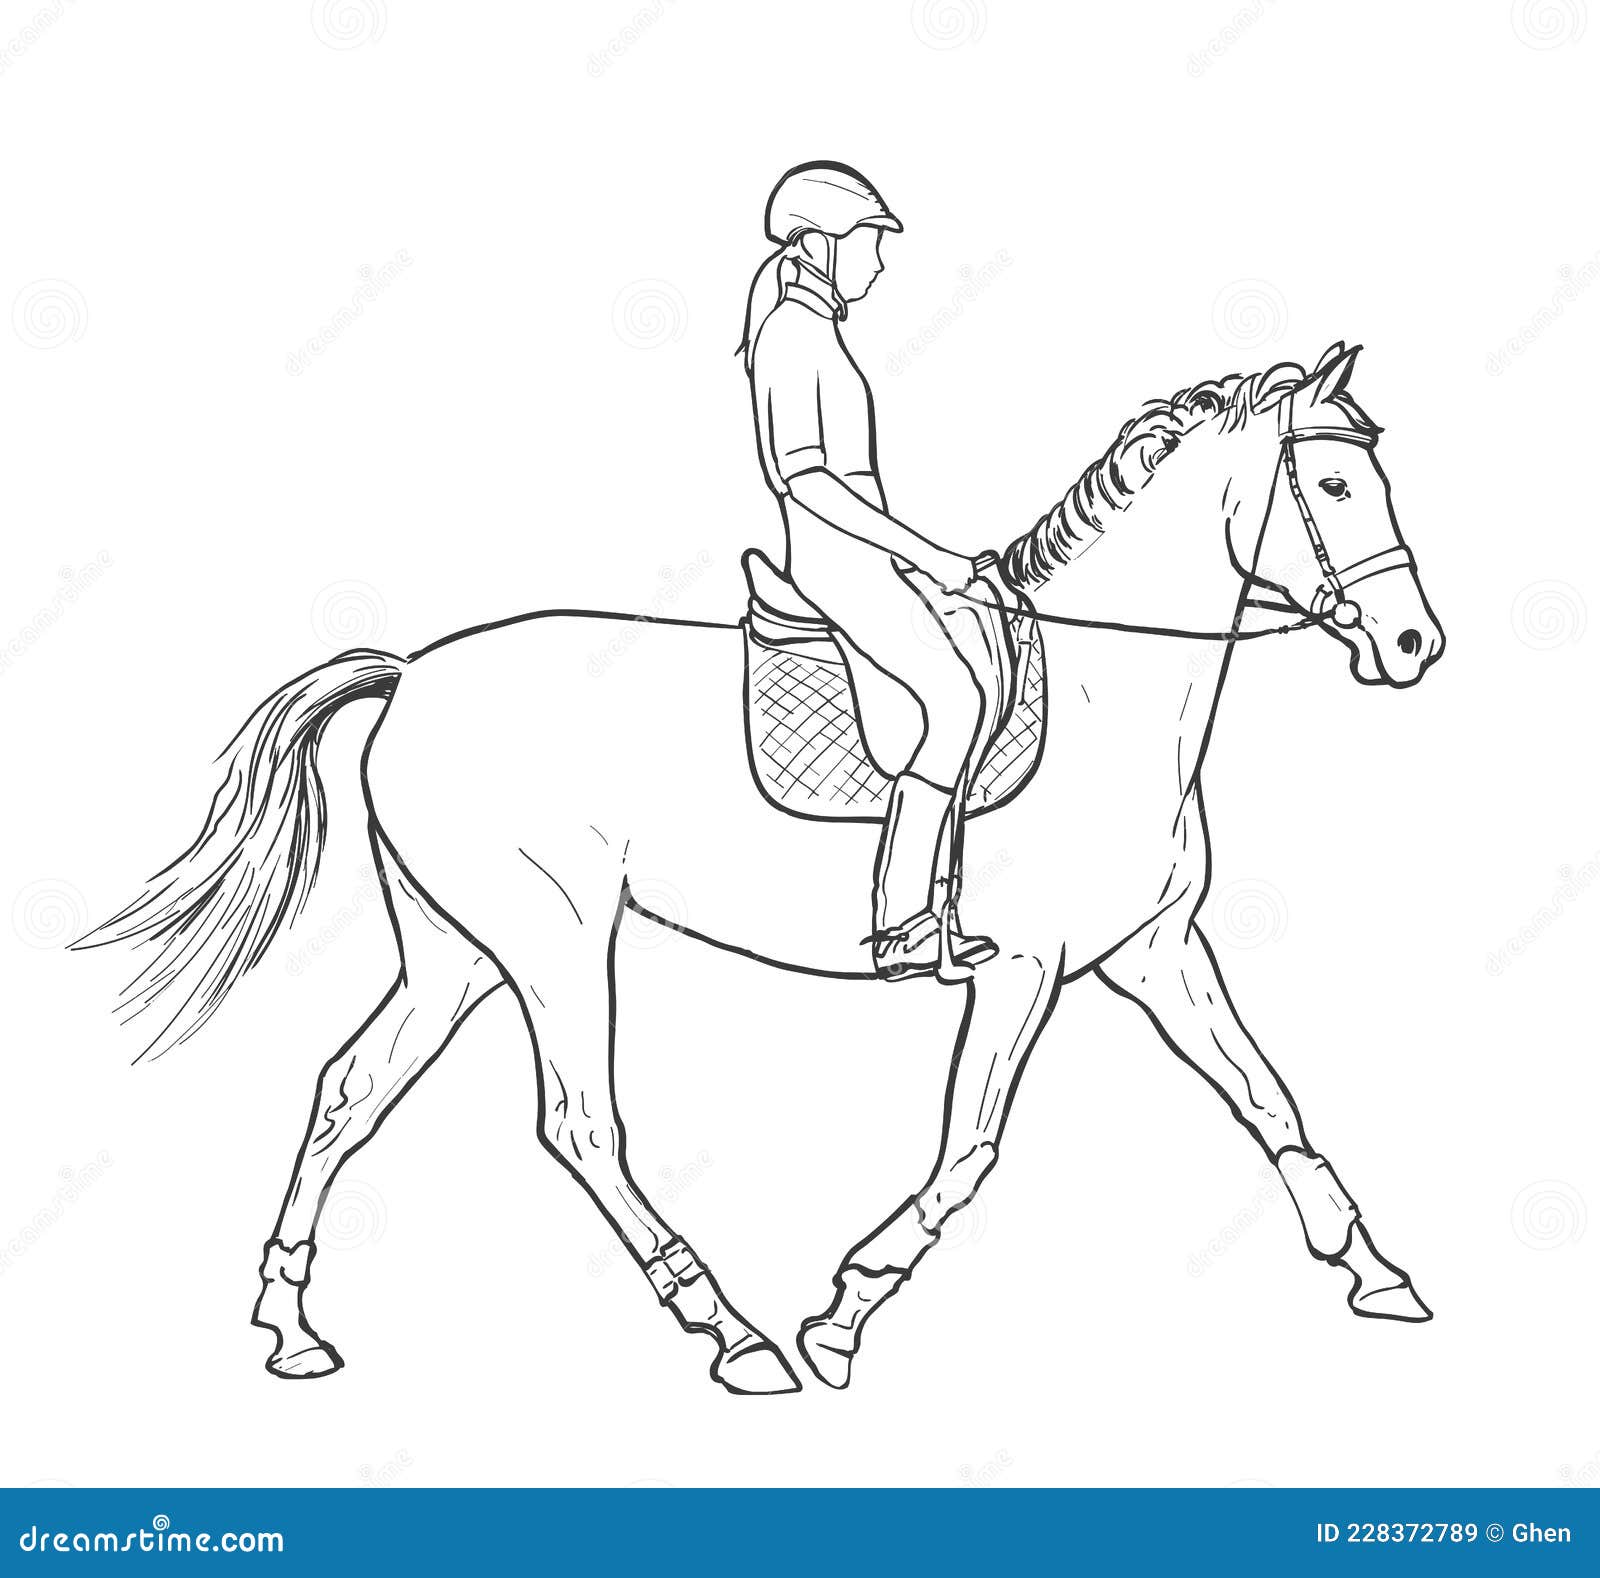 Vetores de Ilustração De Um Cavalo Pulando E Jóquei e mais imagens de  Desenhar - Atividade - Desenhar - Atividade, Cavalo - Família do cavalo,  Desenho - iStock